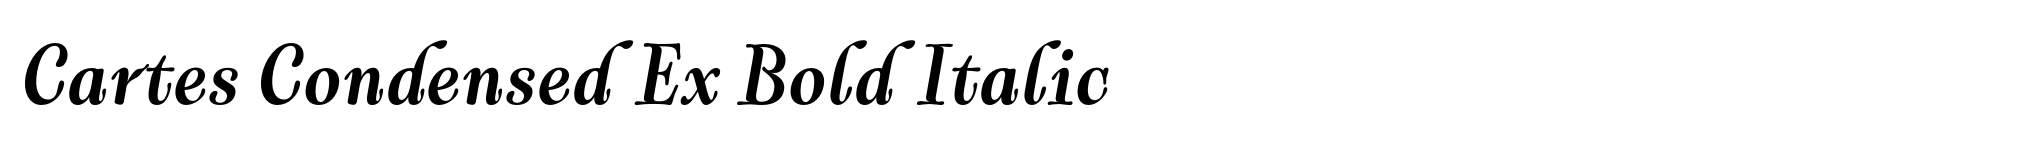 Cartes Condensed Ex Bold Italic image